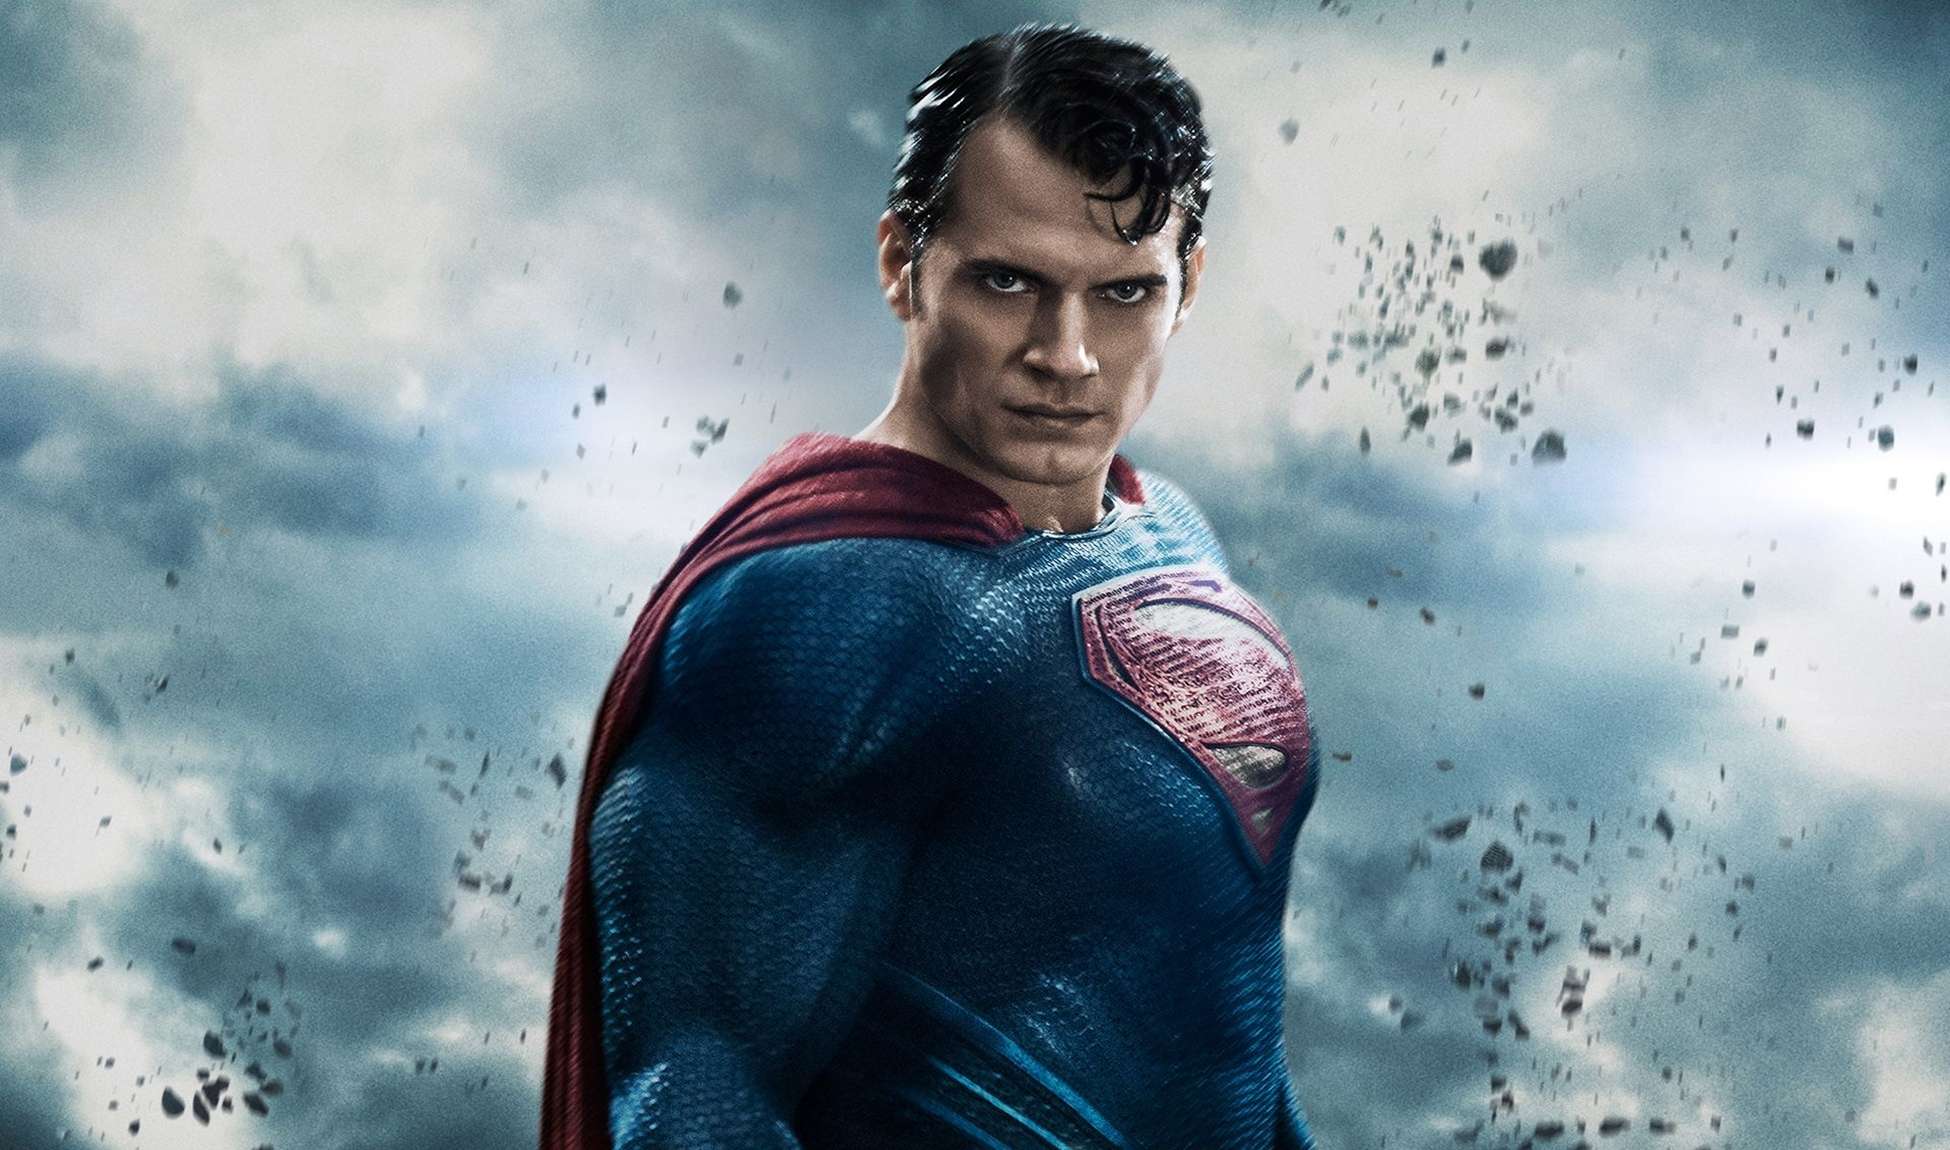 BREAKING NEWS, Henry Cavill lascia il ruolo di Superman!